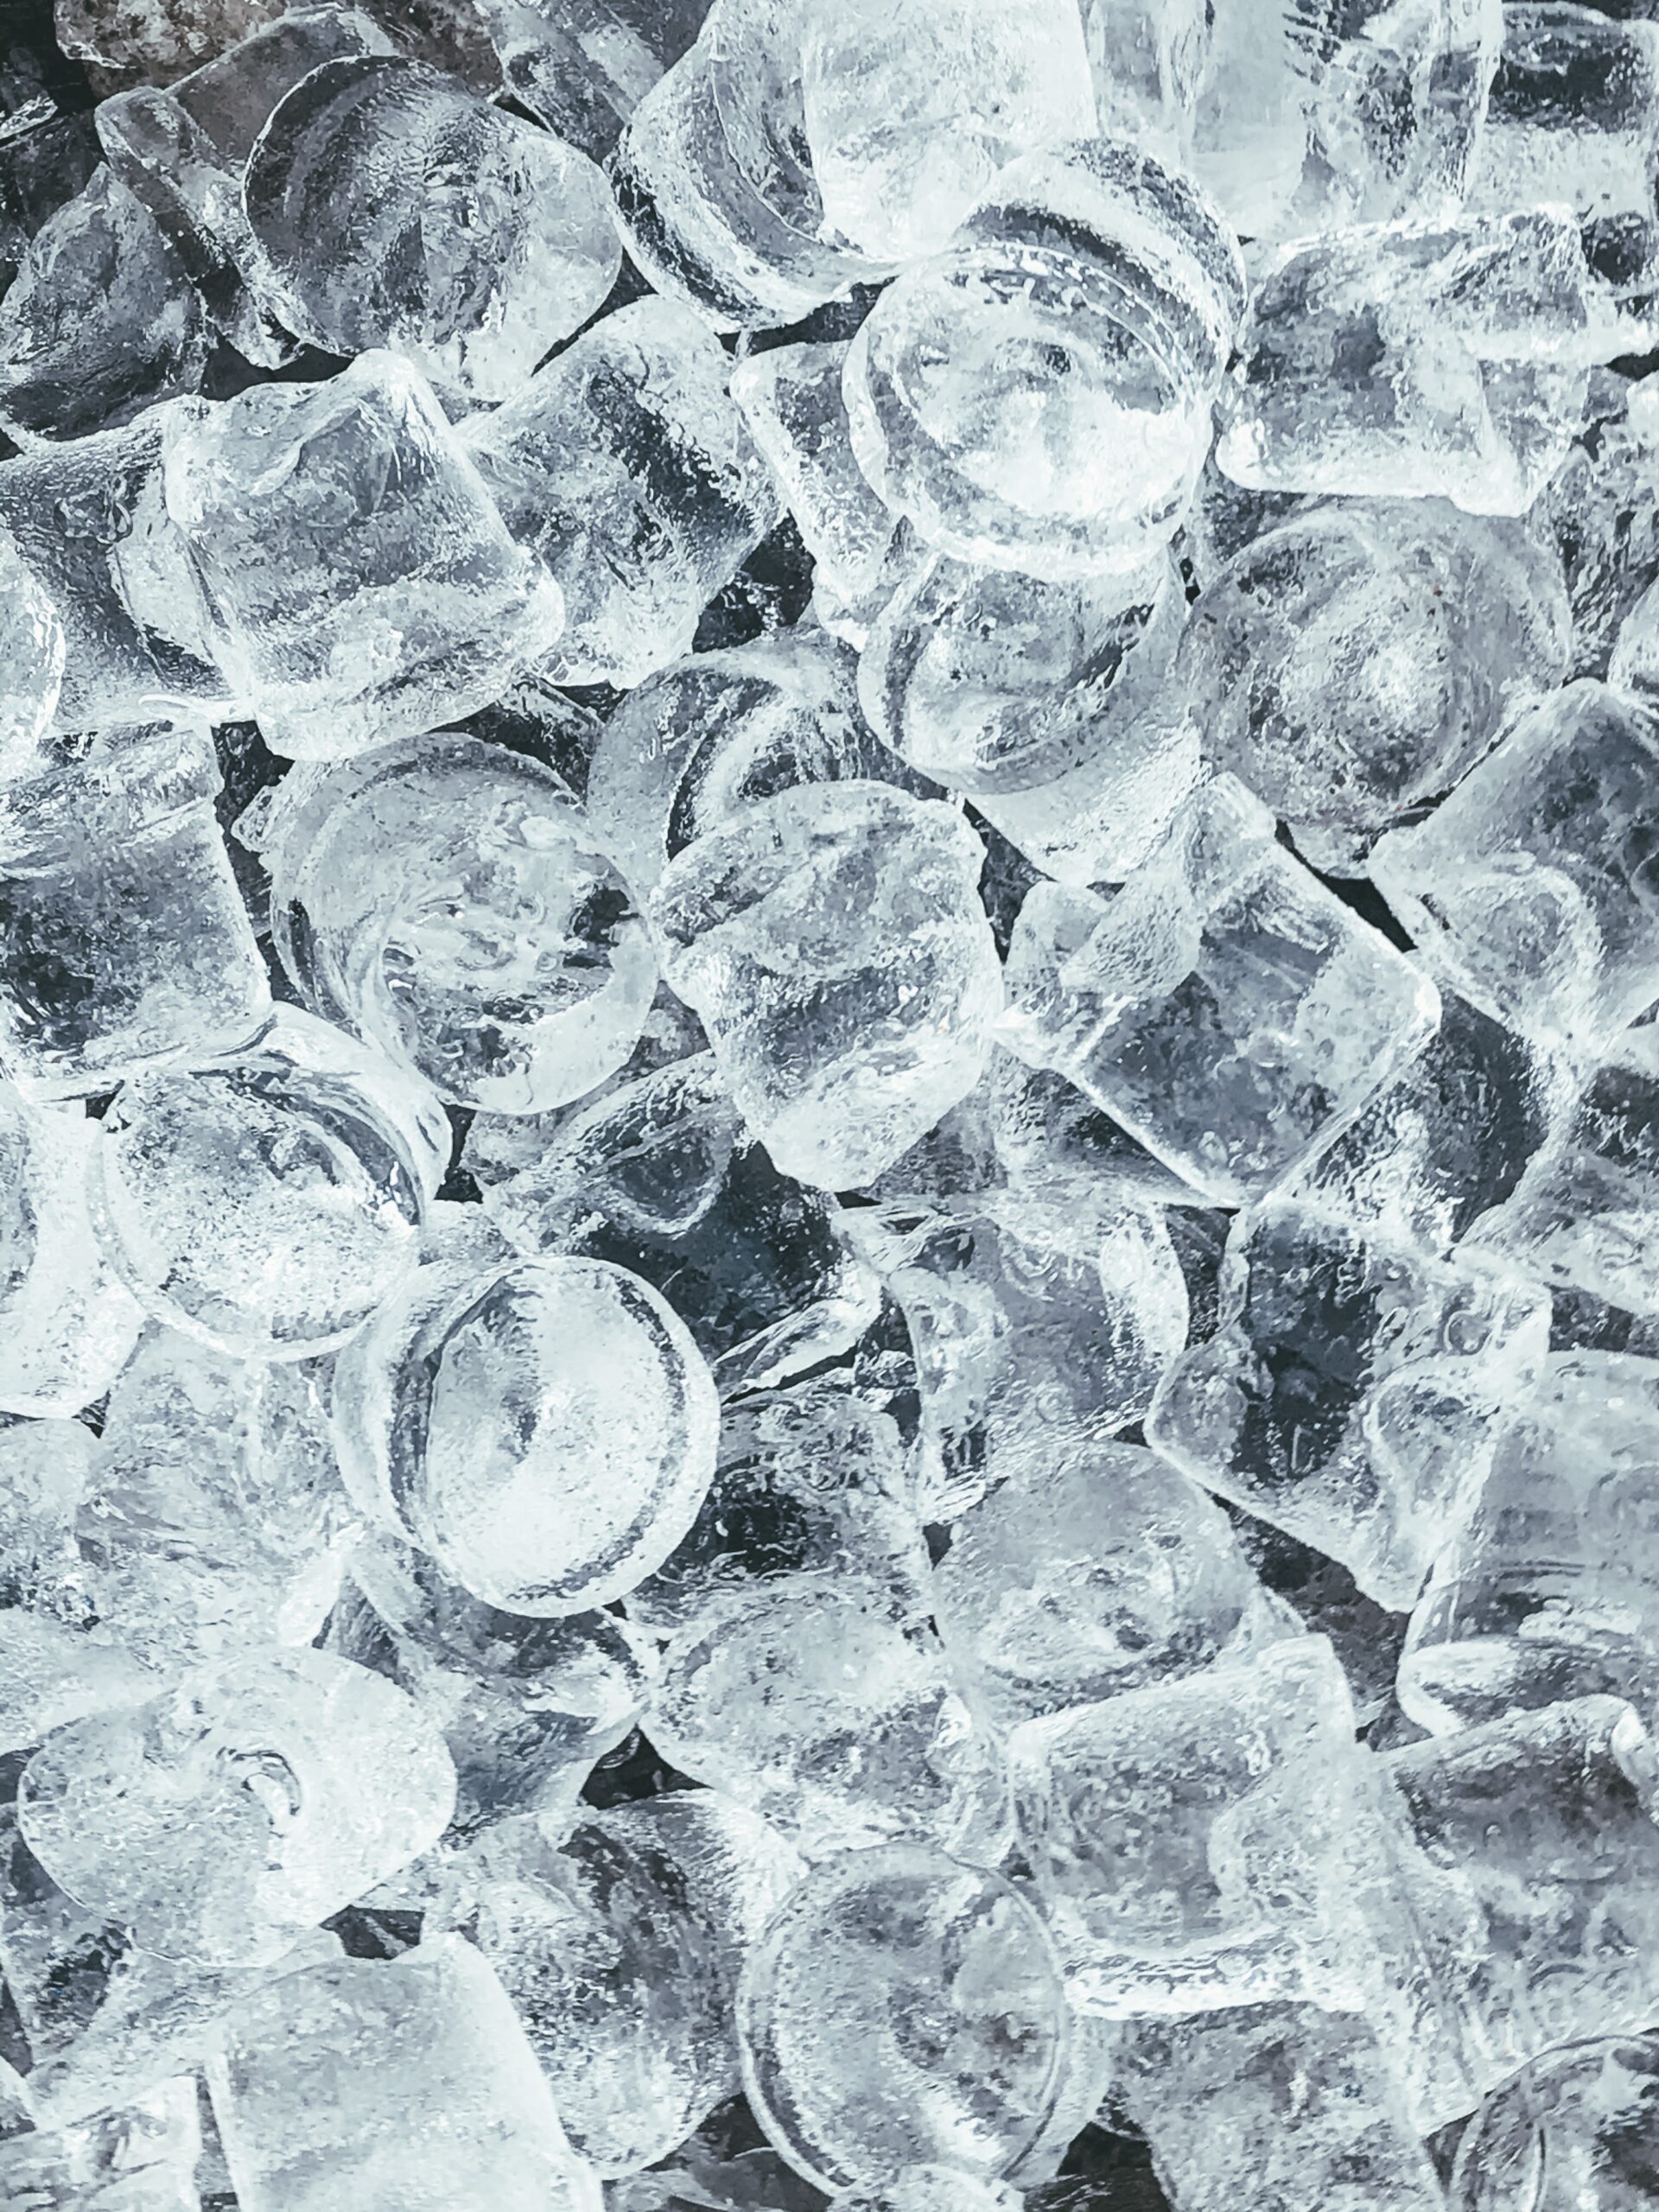 Fotografia de pedras de gelo sobre um fundo escuro.